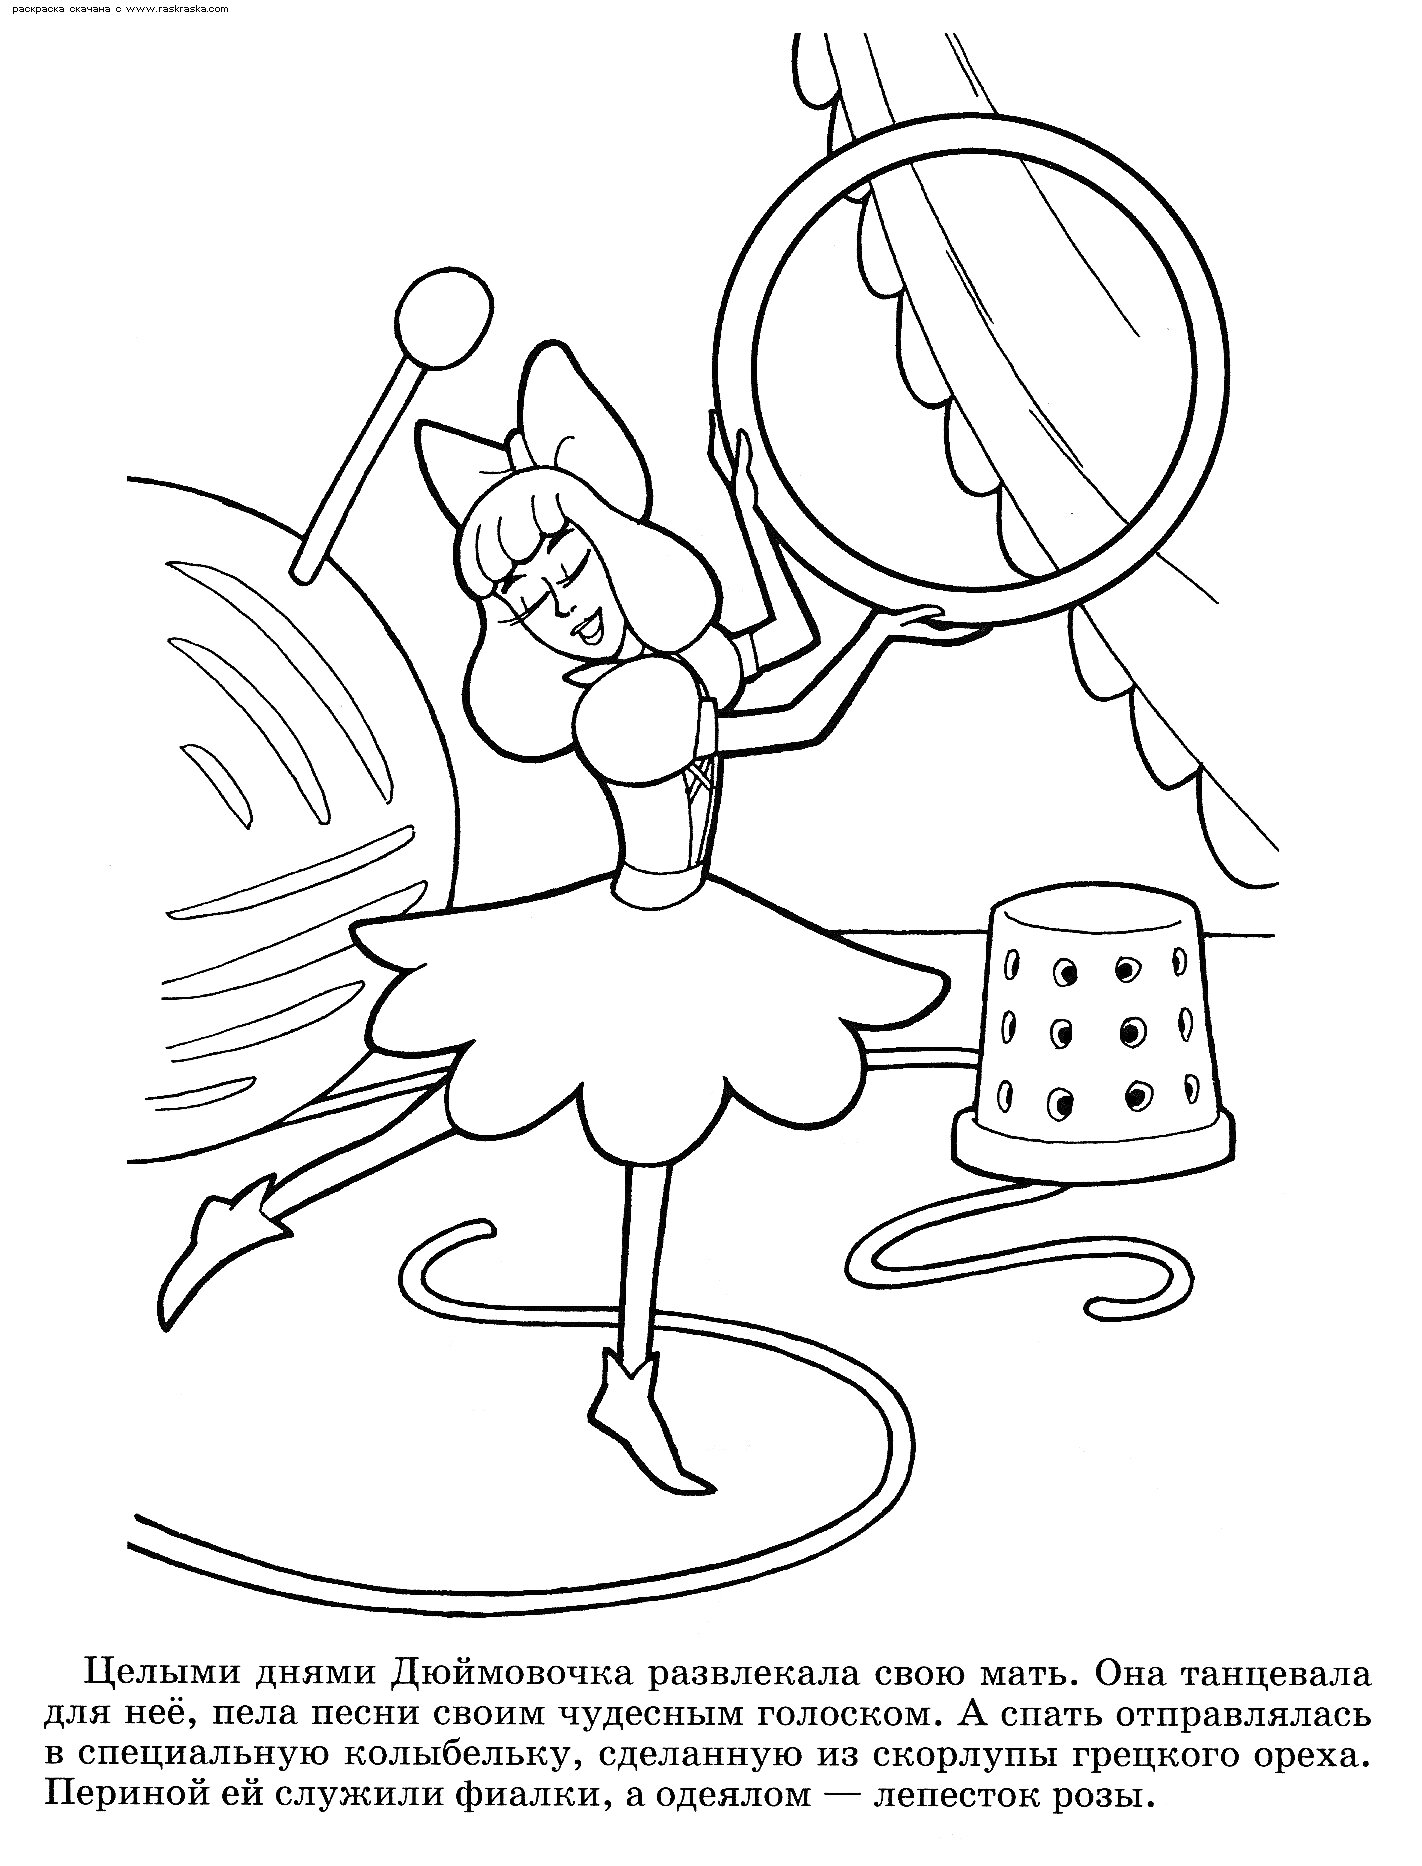 Дюймовочка танцует на подоконнике, рядом с ней катушка ниток, иголка, наперсток и большая пуговица